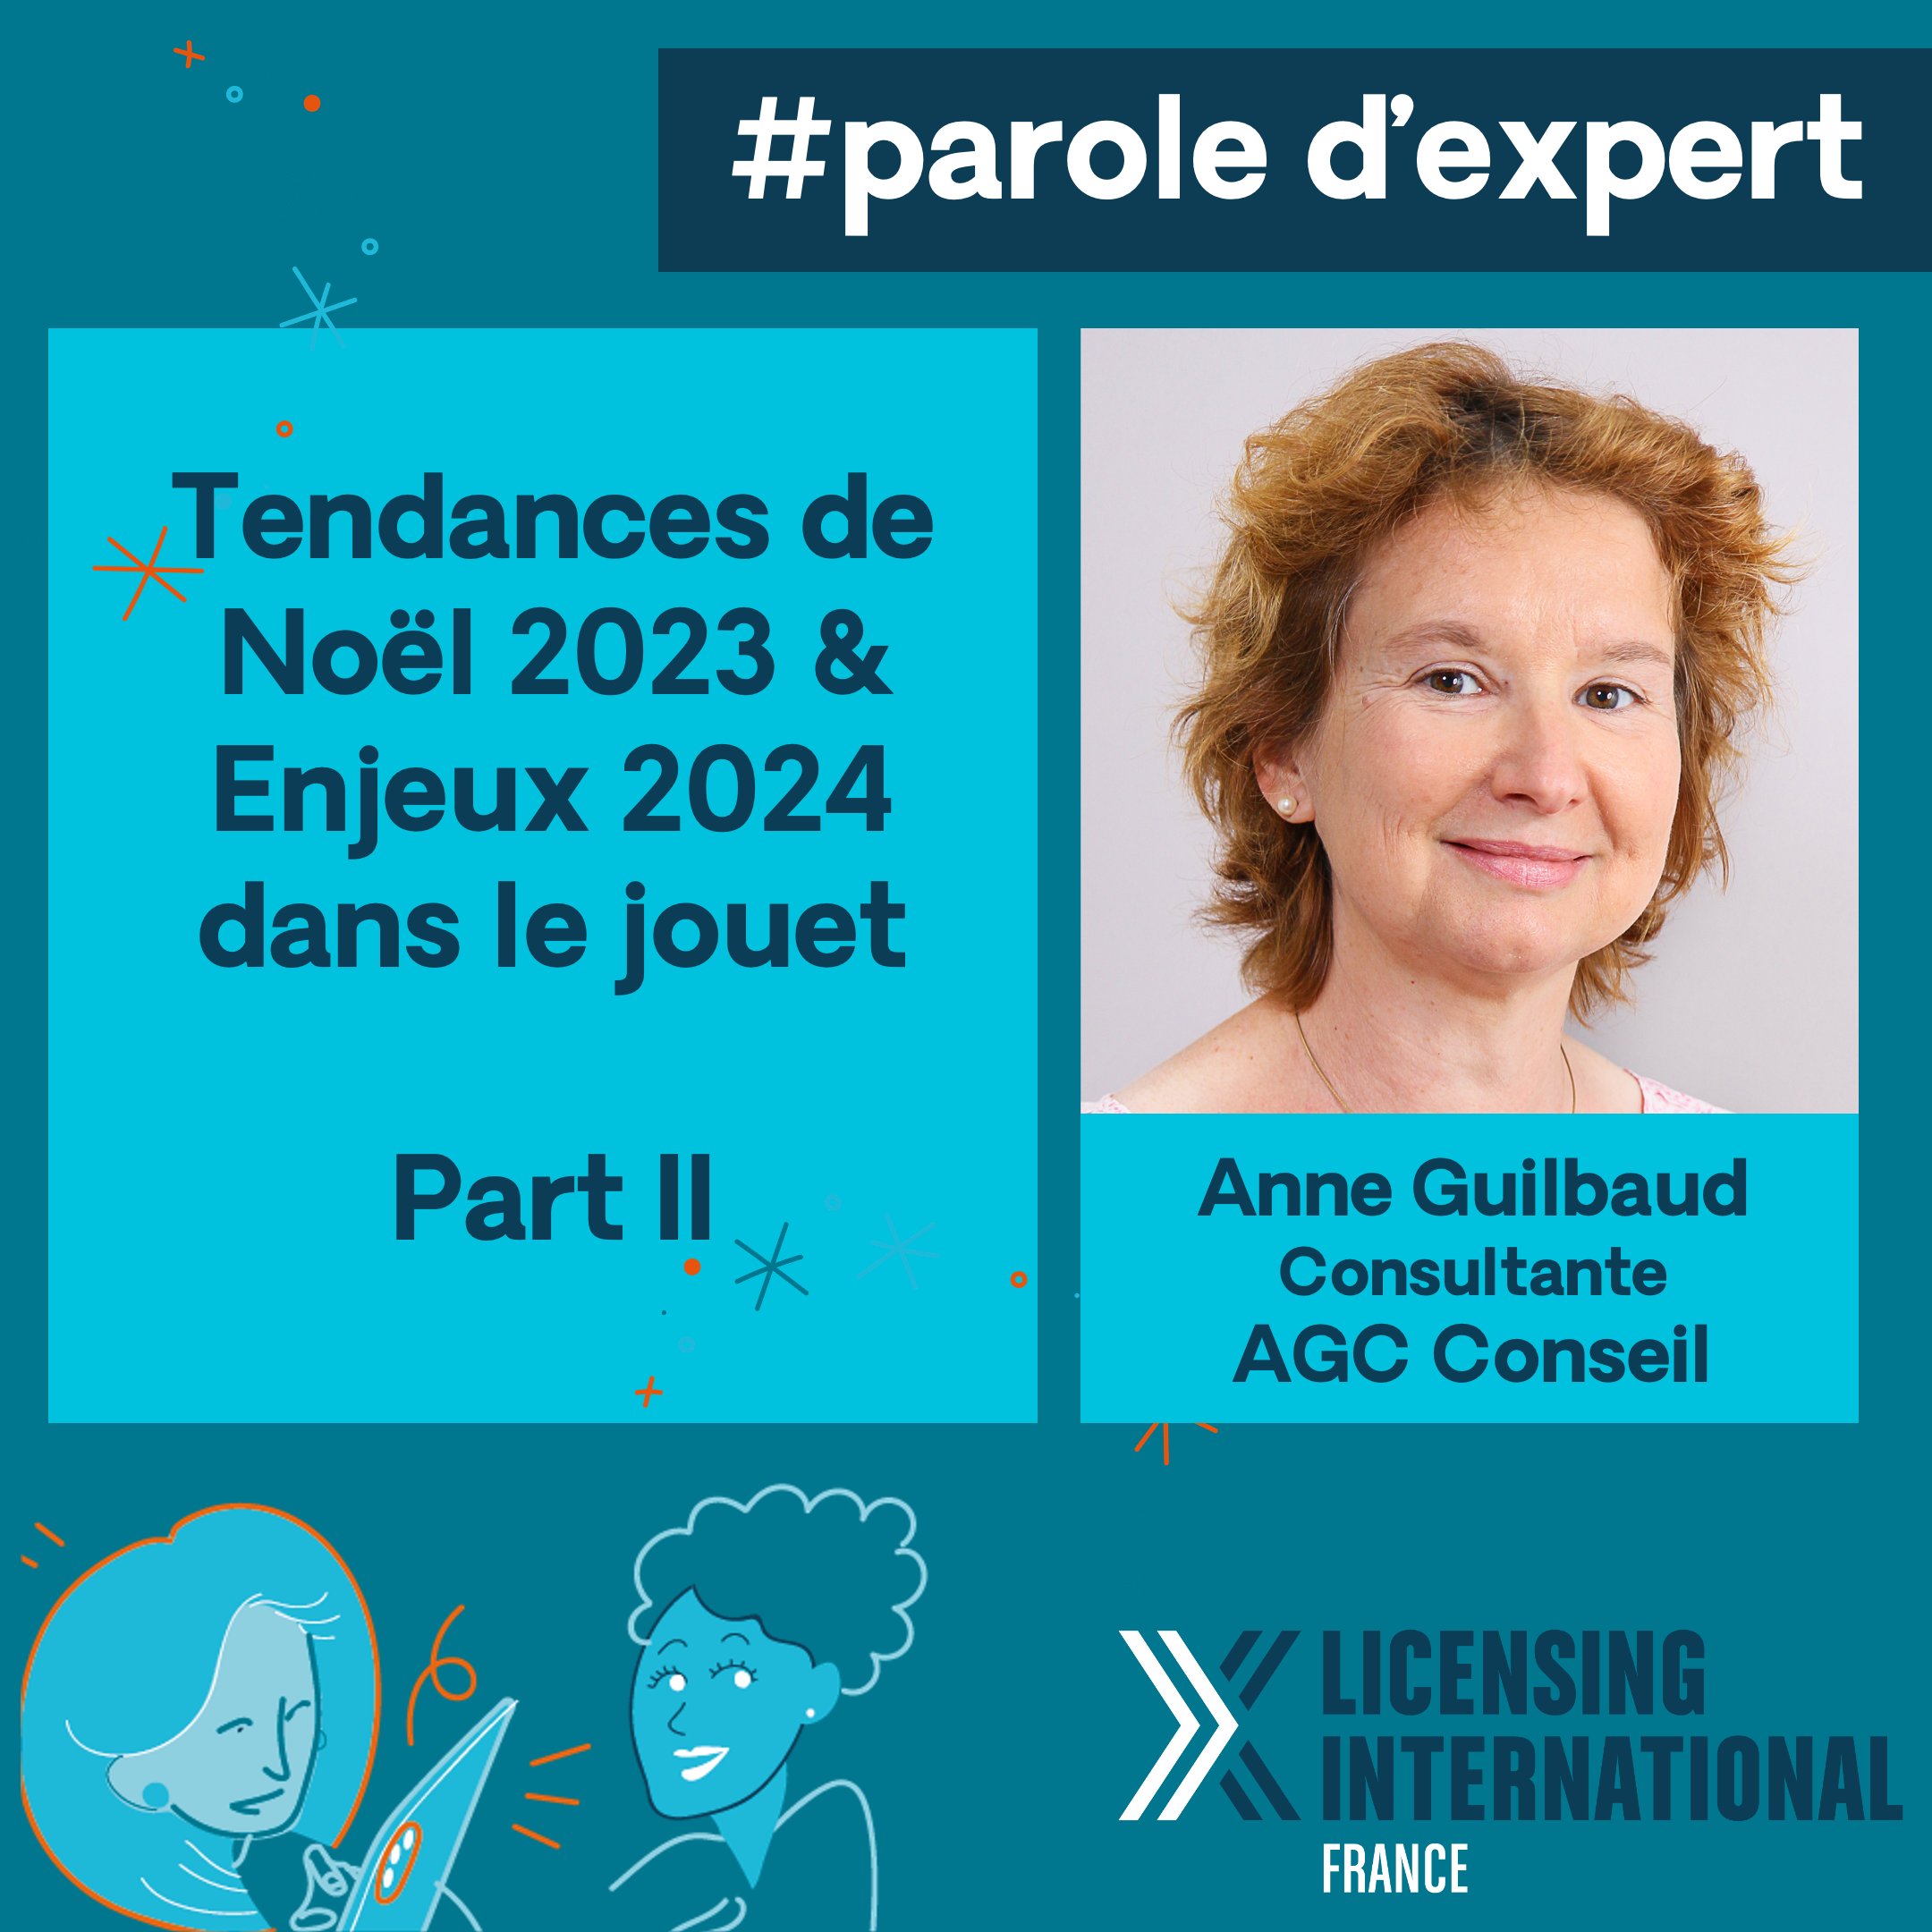 #parole d’expert : Anne Guilbaud (AGC Conseil) – Tendances de Noël 2023 & Enjeux 2024 dans le jouet – Partie II image